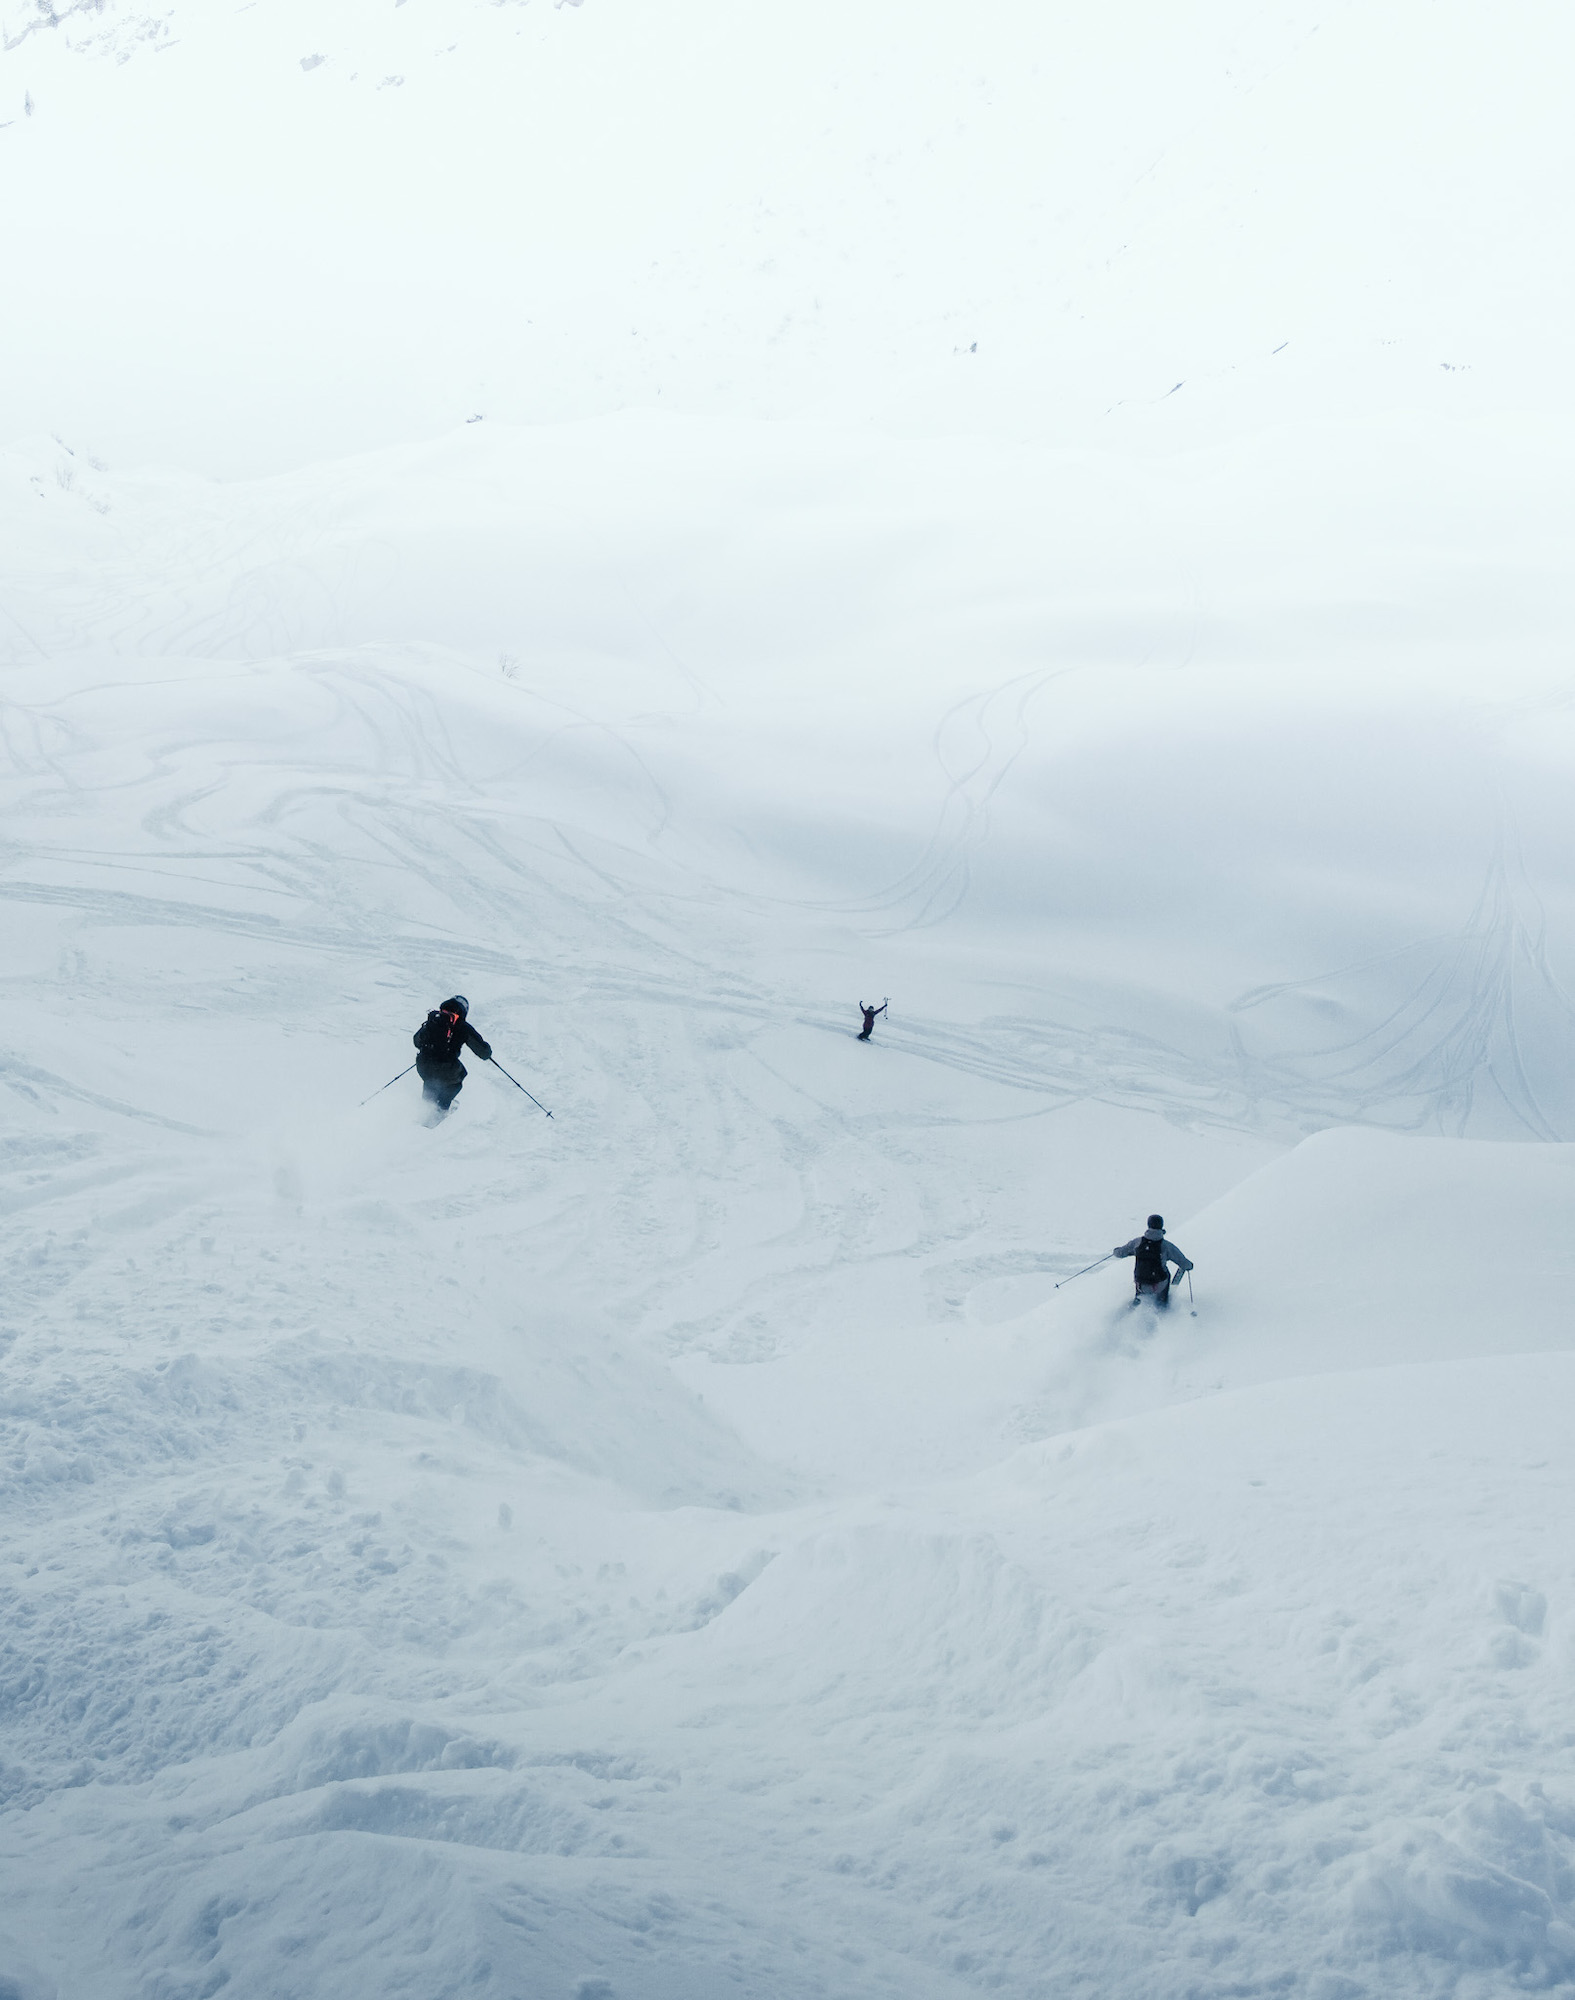 Three skiers turning in foggy powder snow